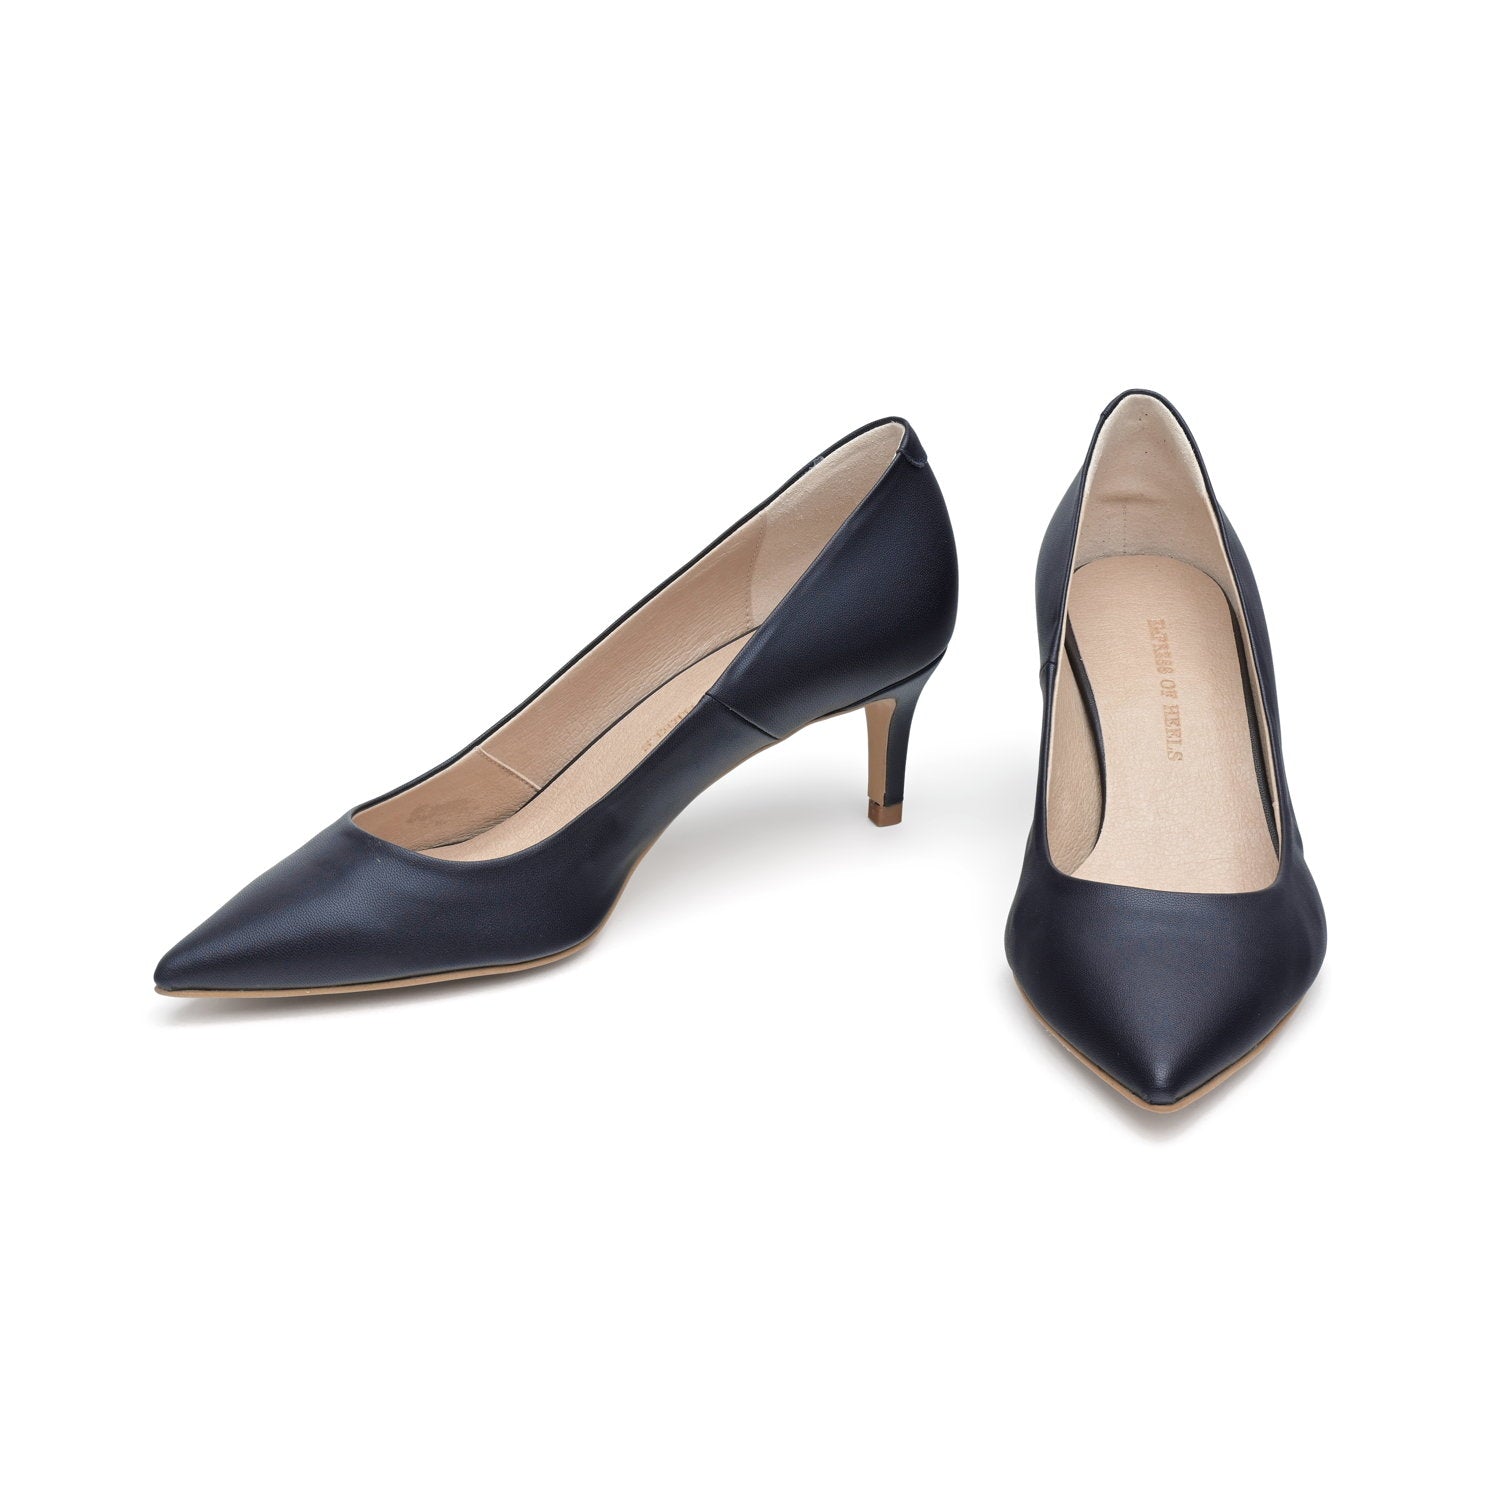 The Blue - vegan 50mm heels